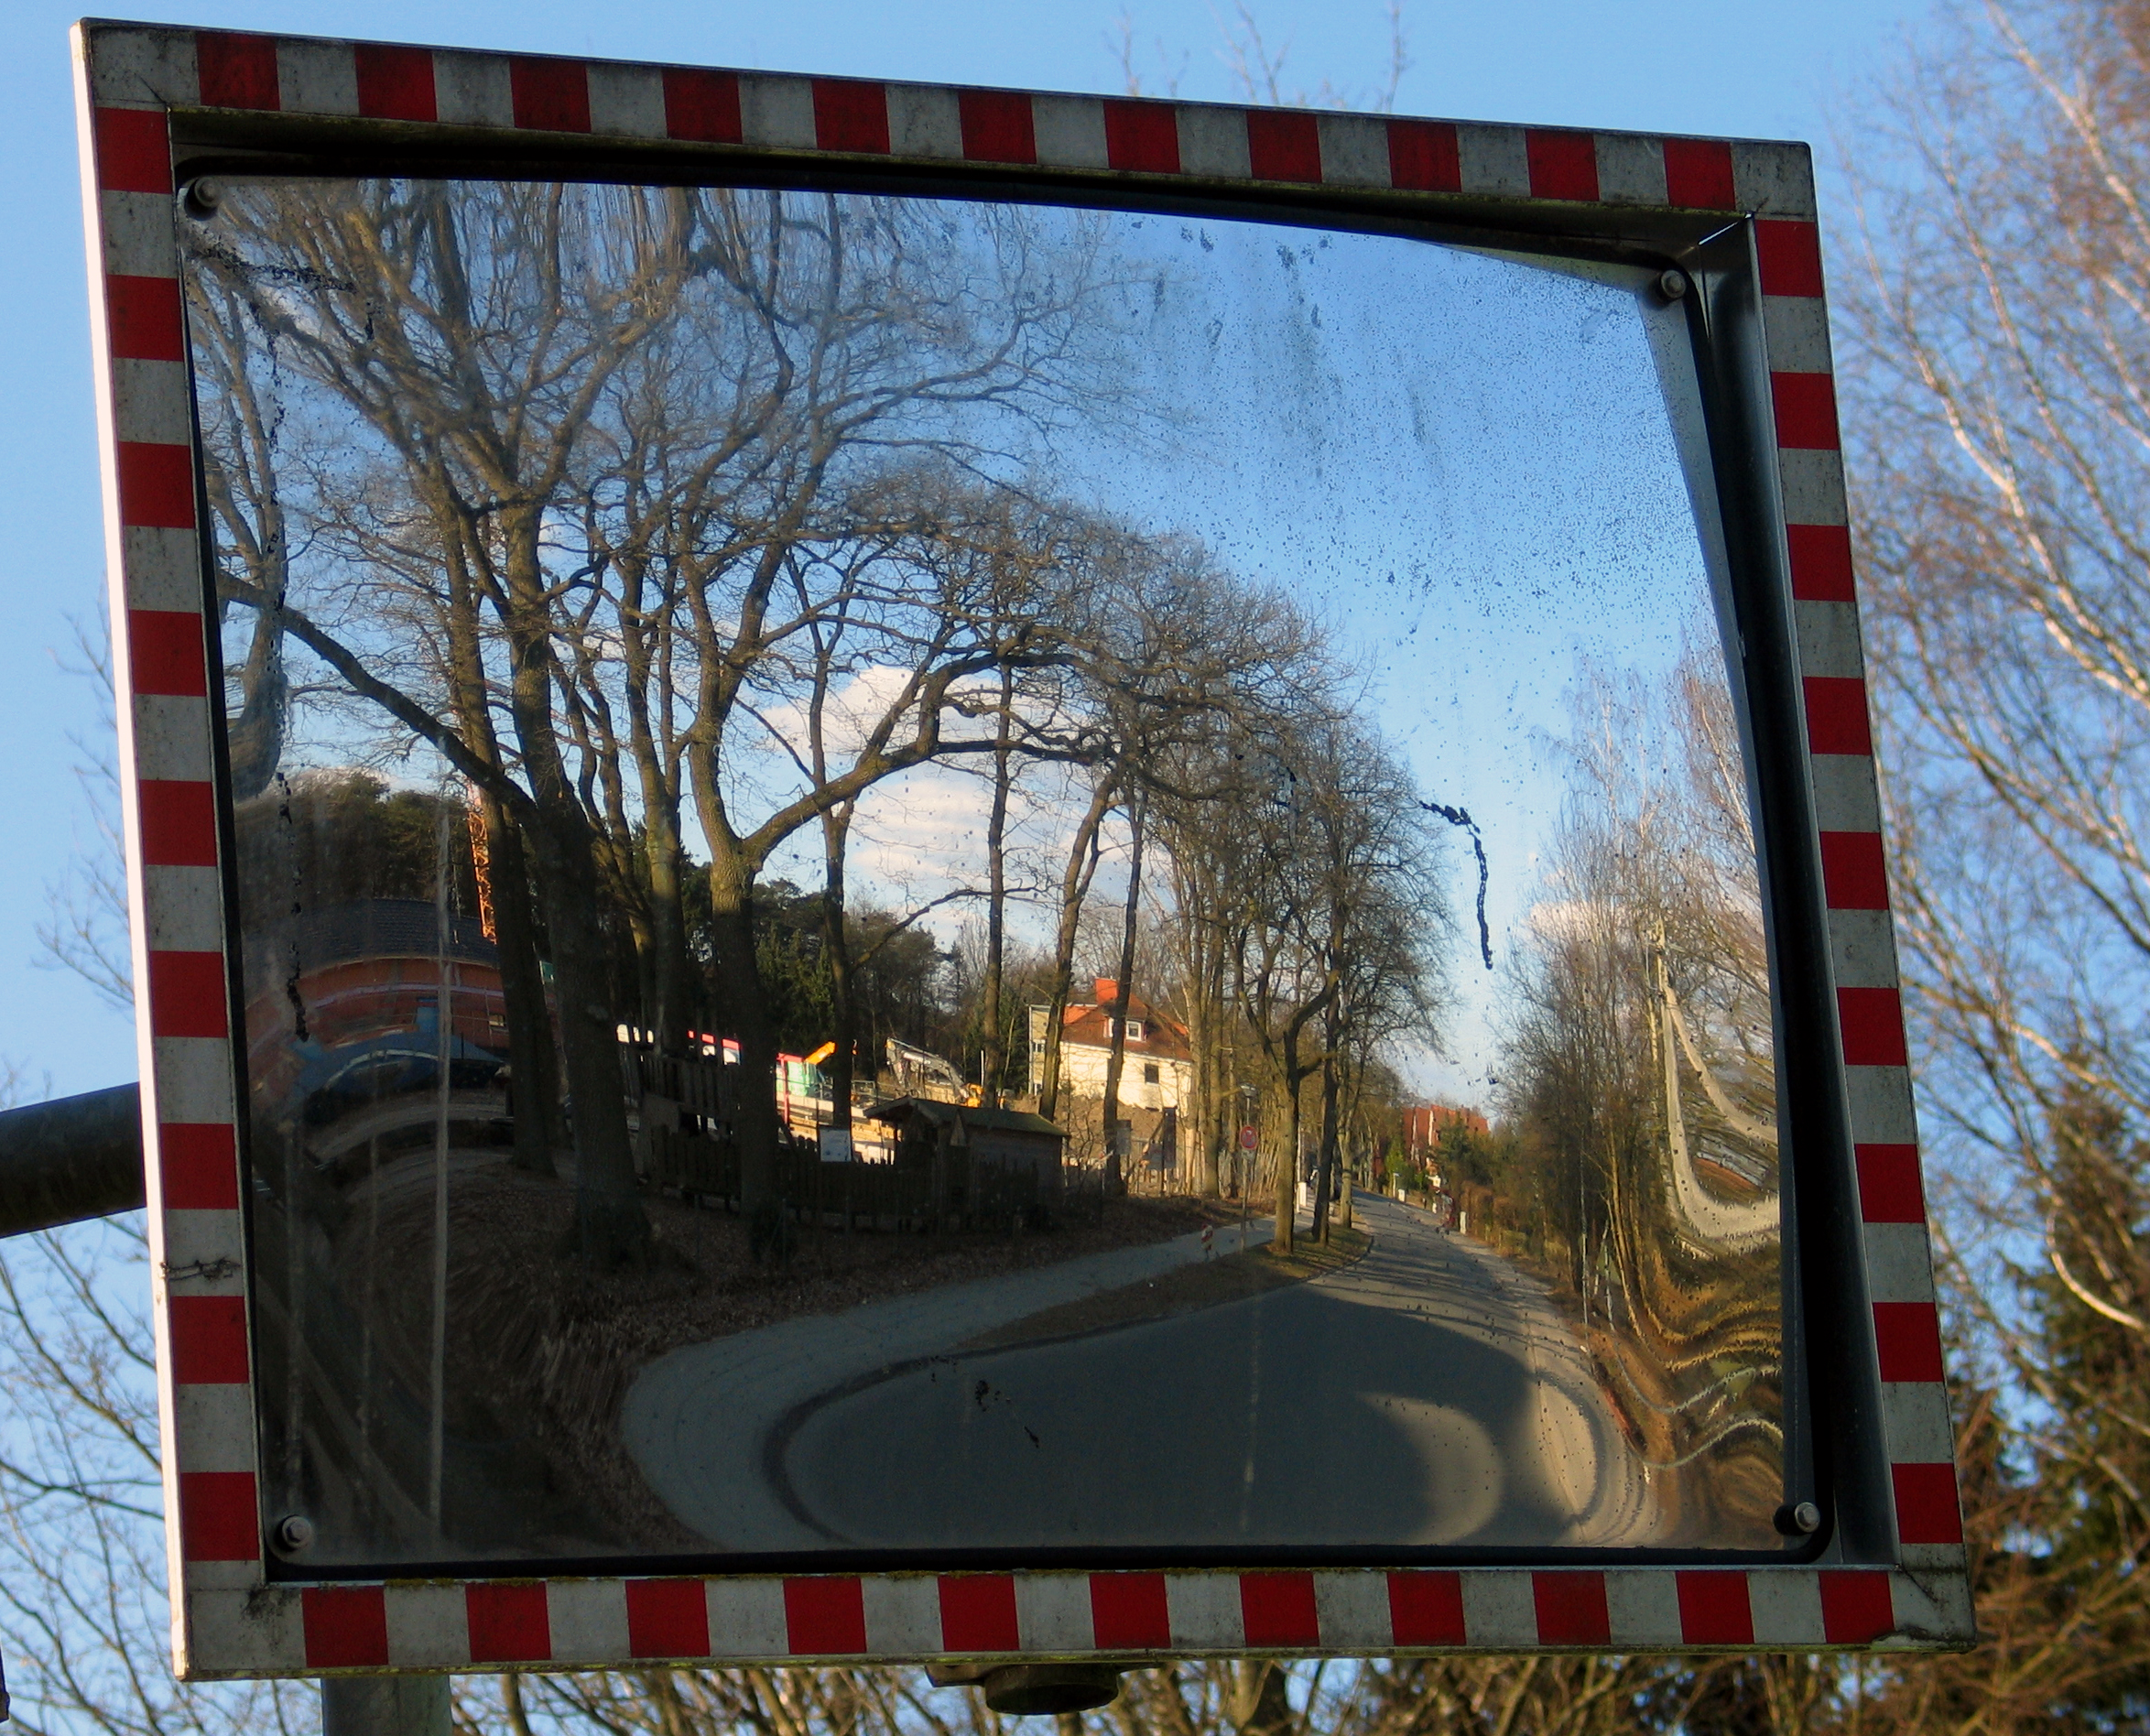 File:Wittinger Straße, Celle, Ausfahrt-Spiegel ohne parkende Autos